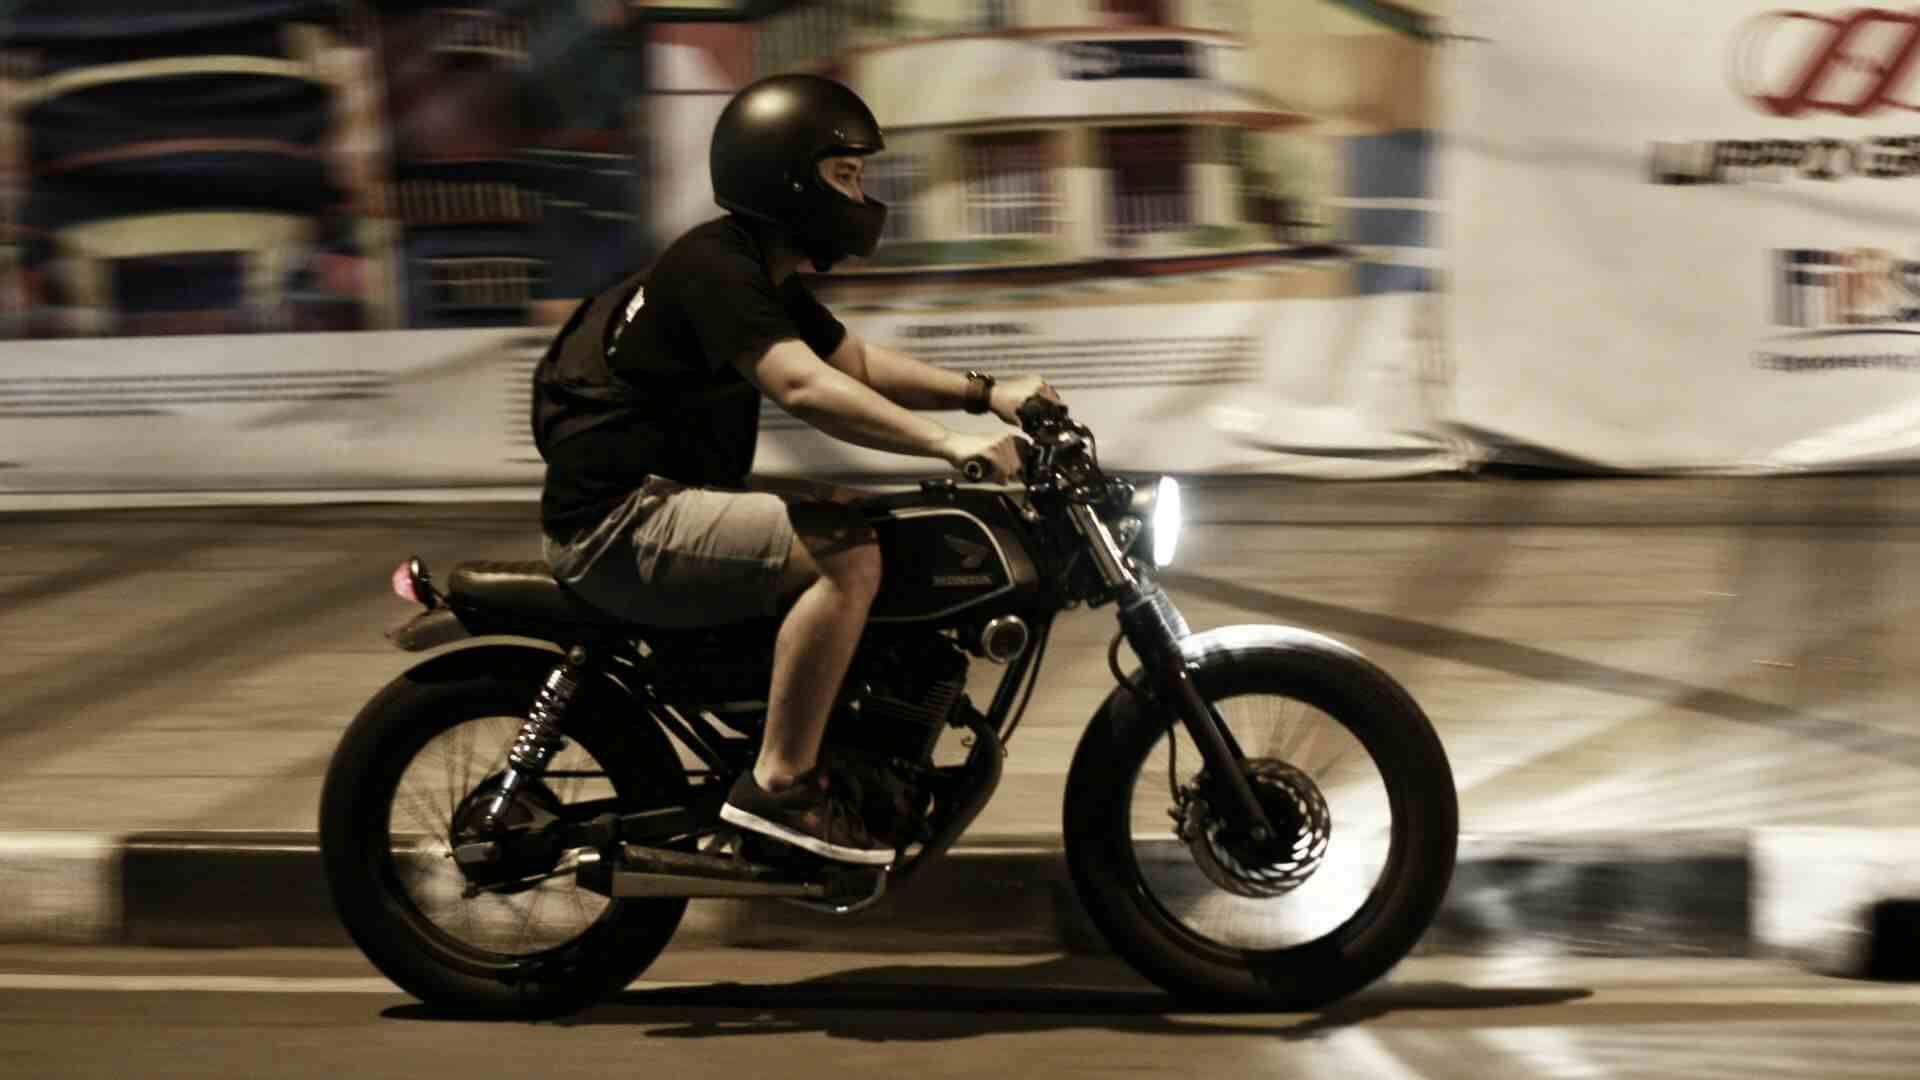 Pilotando moto sem habilitação